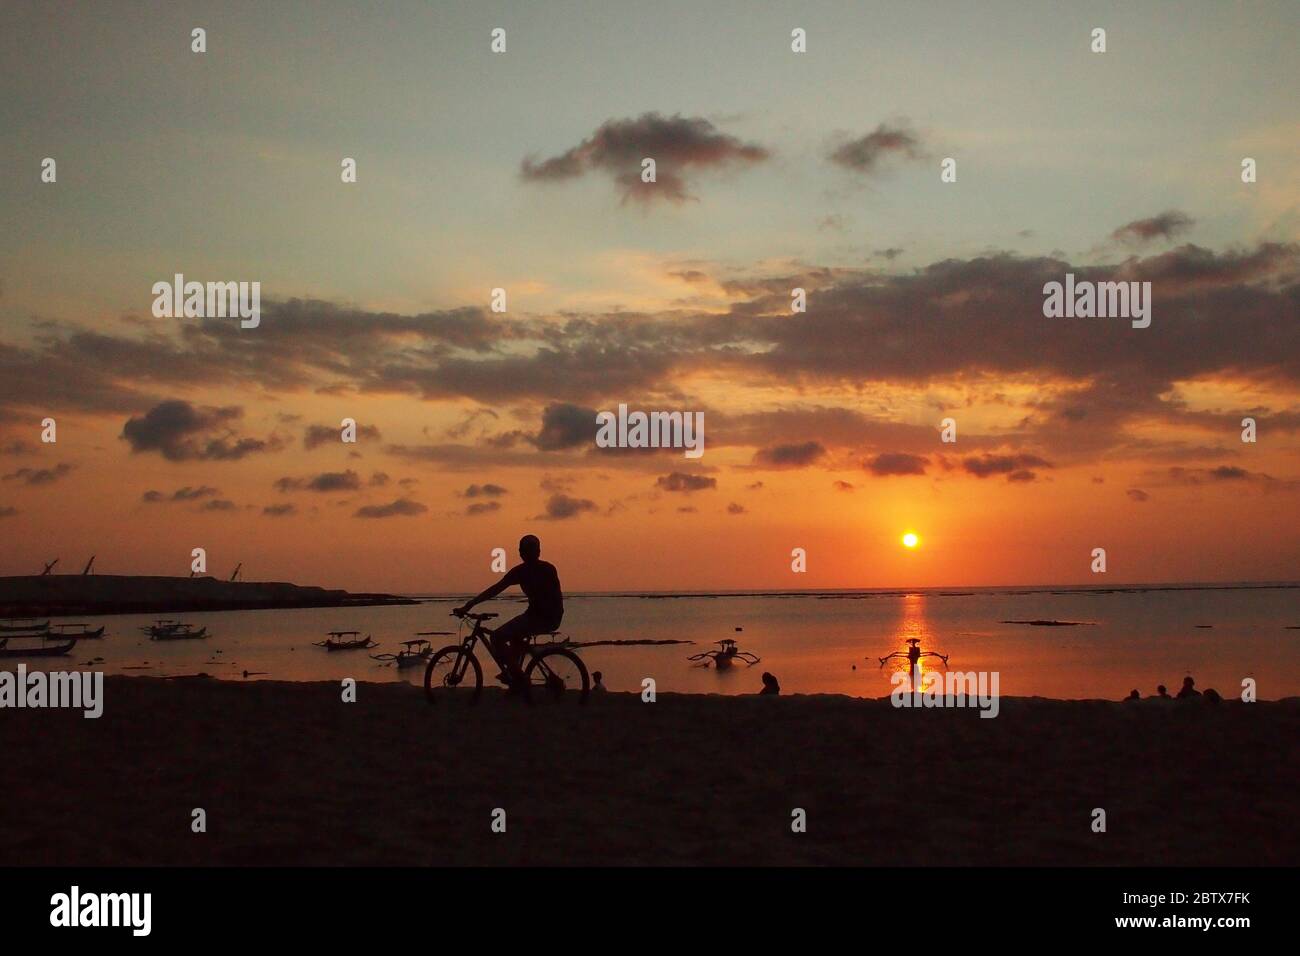 Silhouette eines Touristen auf einem Fahrrad, der den Sonnenuntergang mit einer dramatischen Atmosphäre des Himmels beobachtet Stockfoto